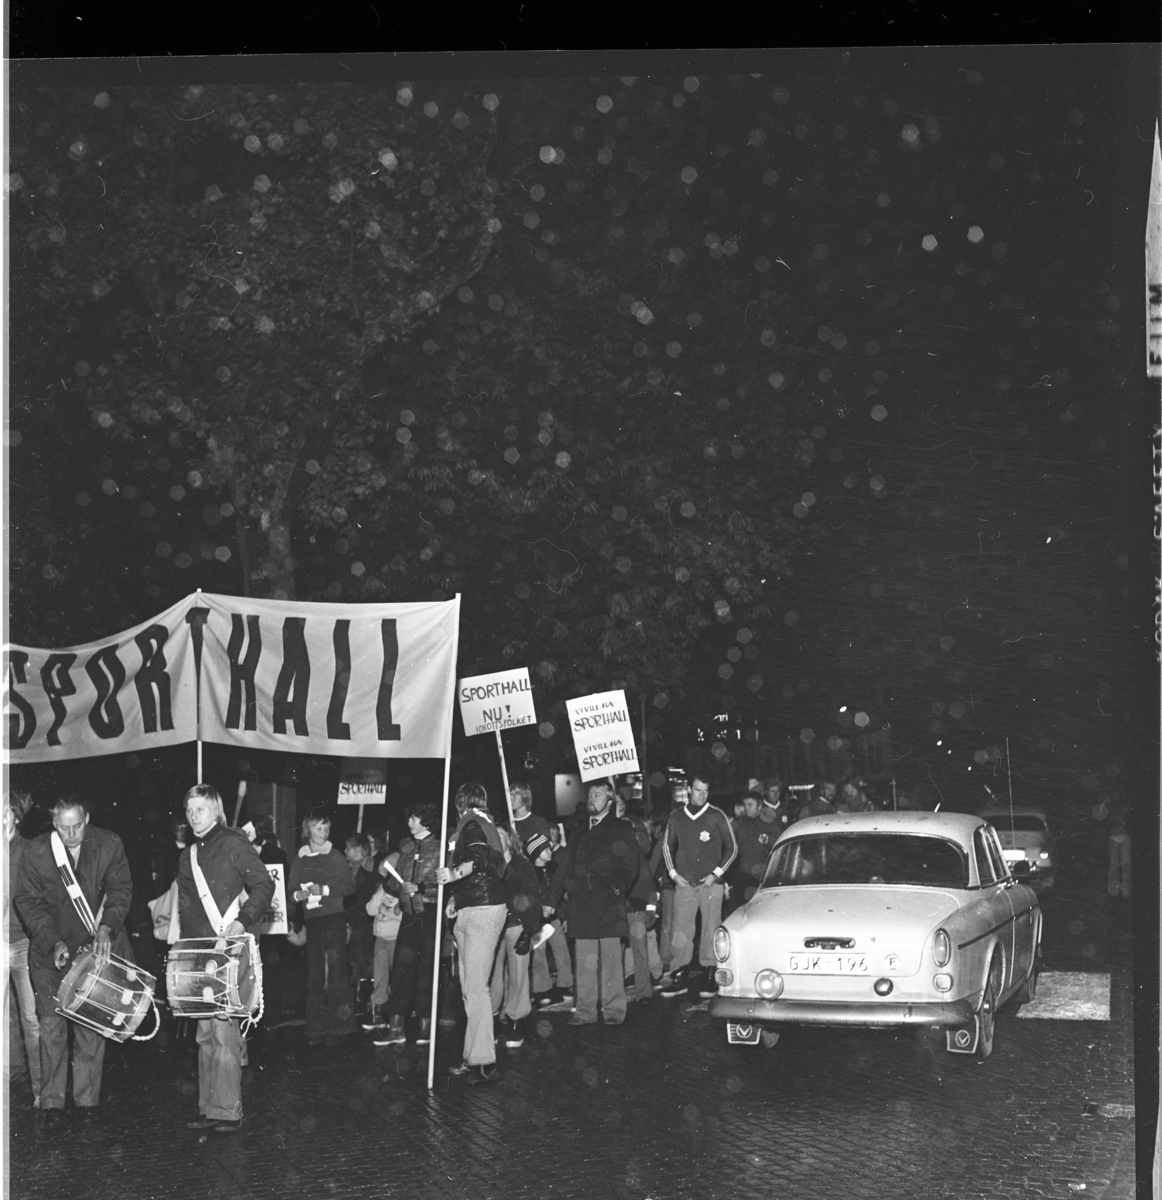 Ungdomar och vuxna med banderoll och plakat om "Sporthall". Trumslagare i täten. Grännabor demonstrerar för att få en sporthall till Gränna. Det är oktober, mörkt och blött på vägen. En Volvo Amazon passer demonstrationståget.